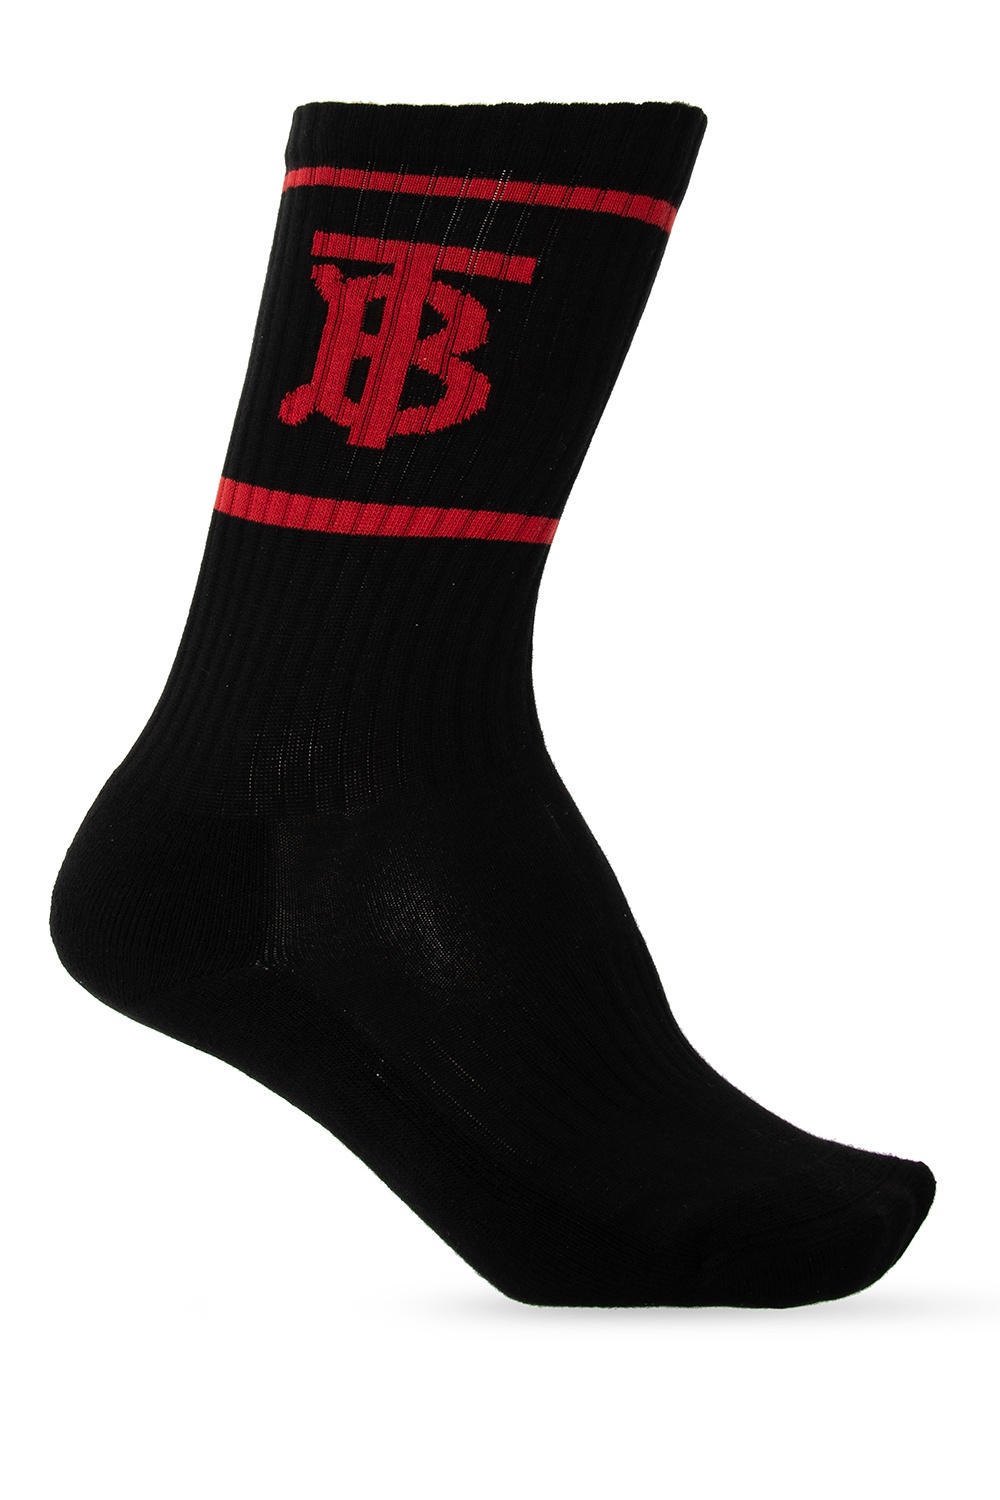 Burberry Branded socks